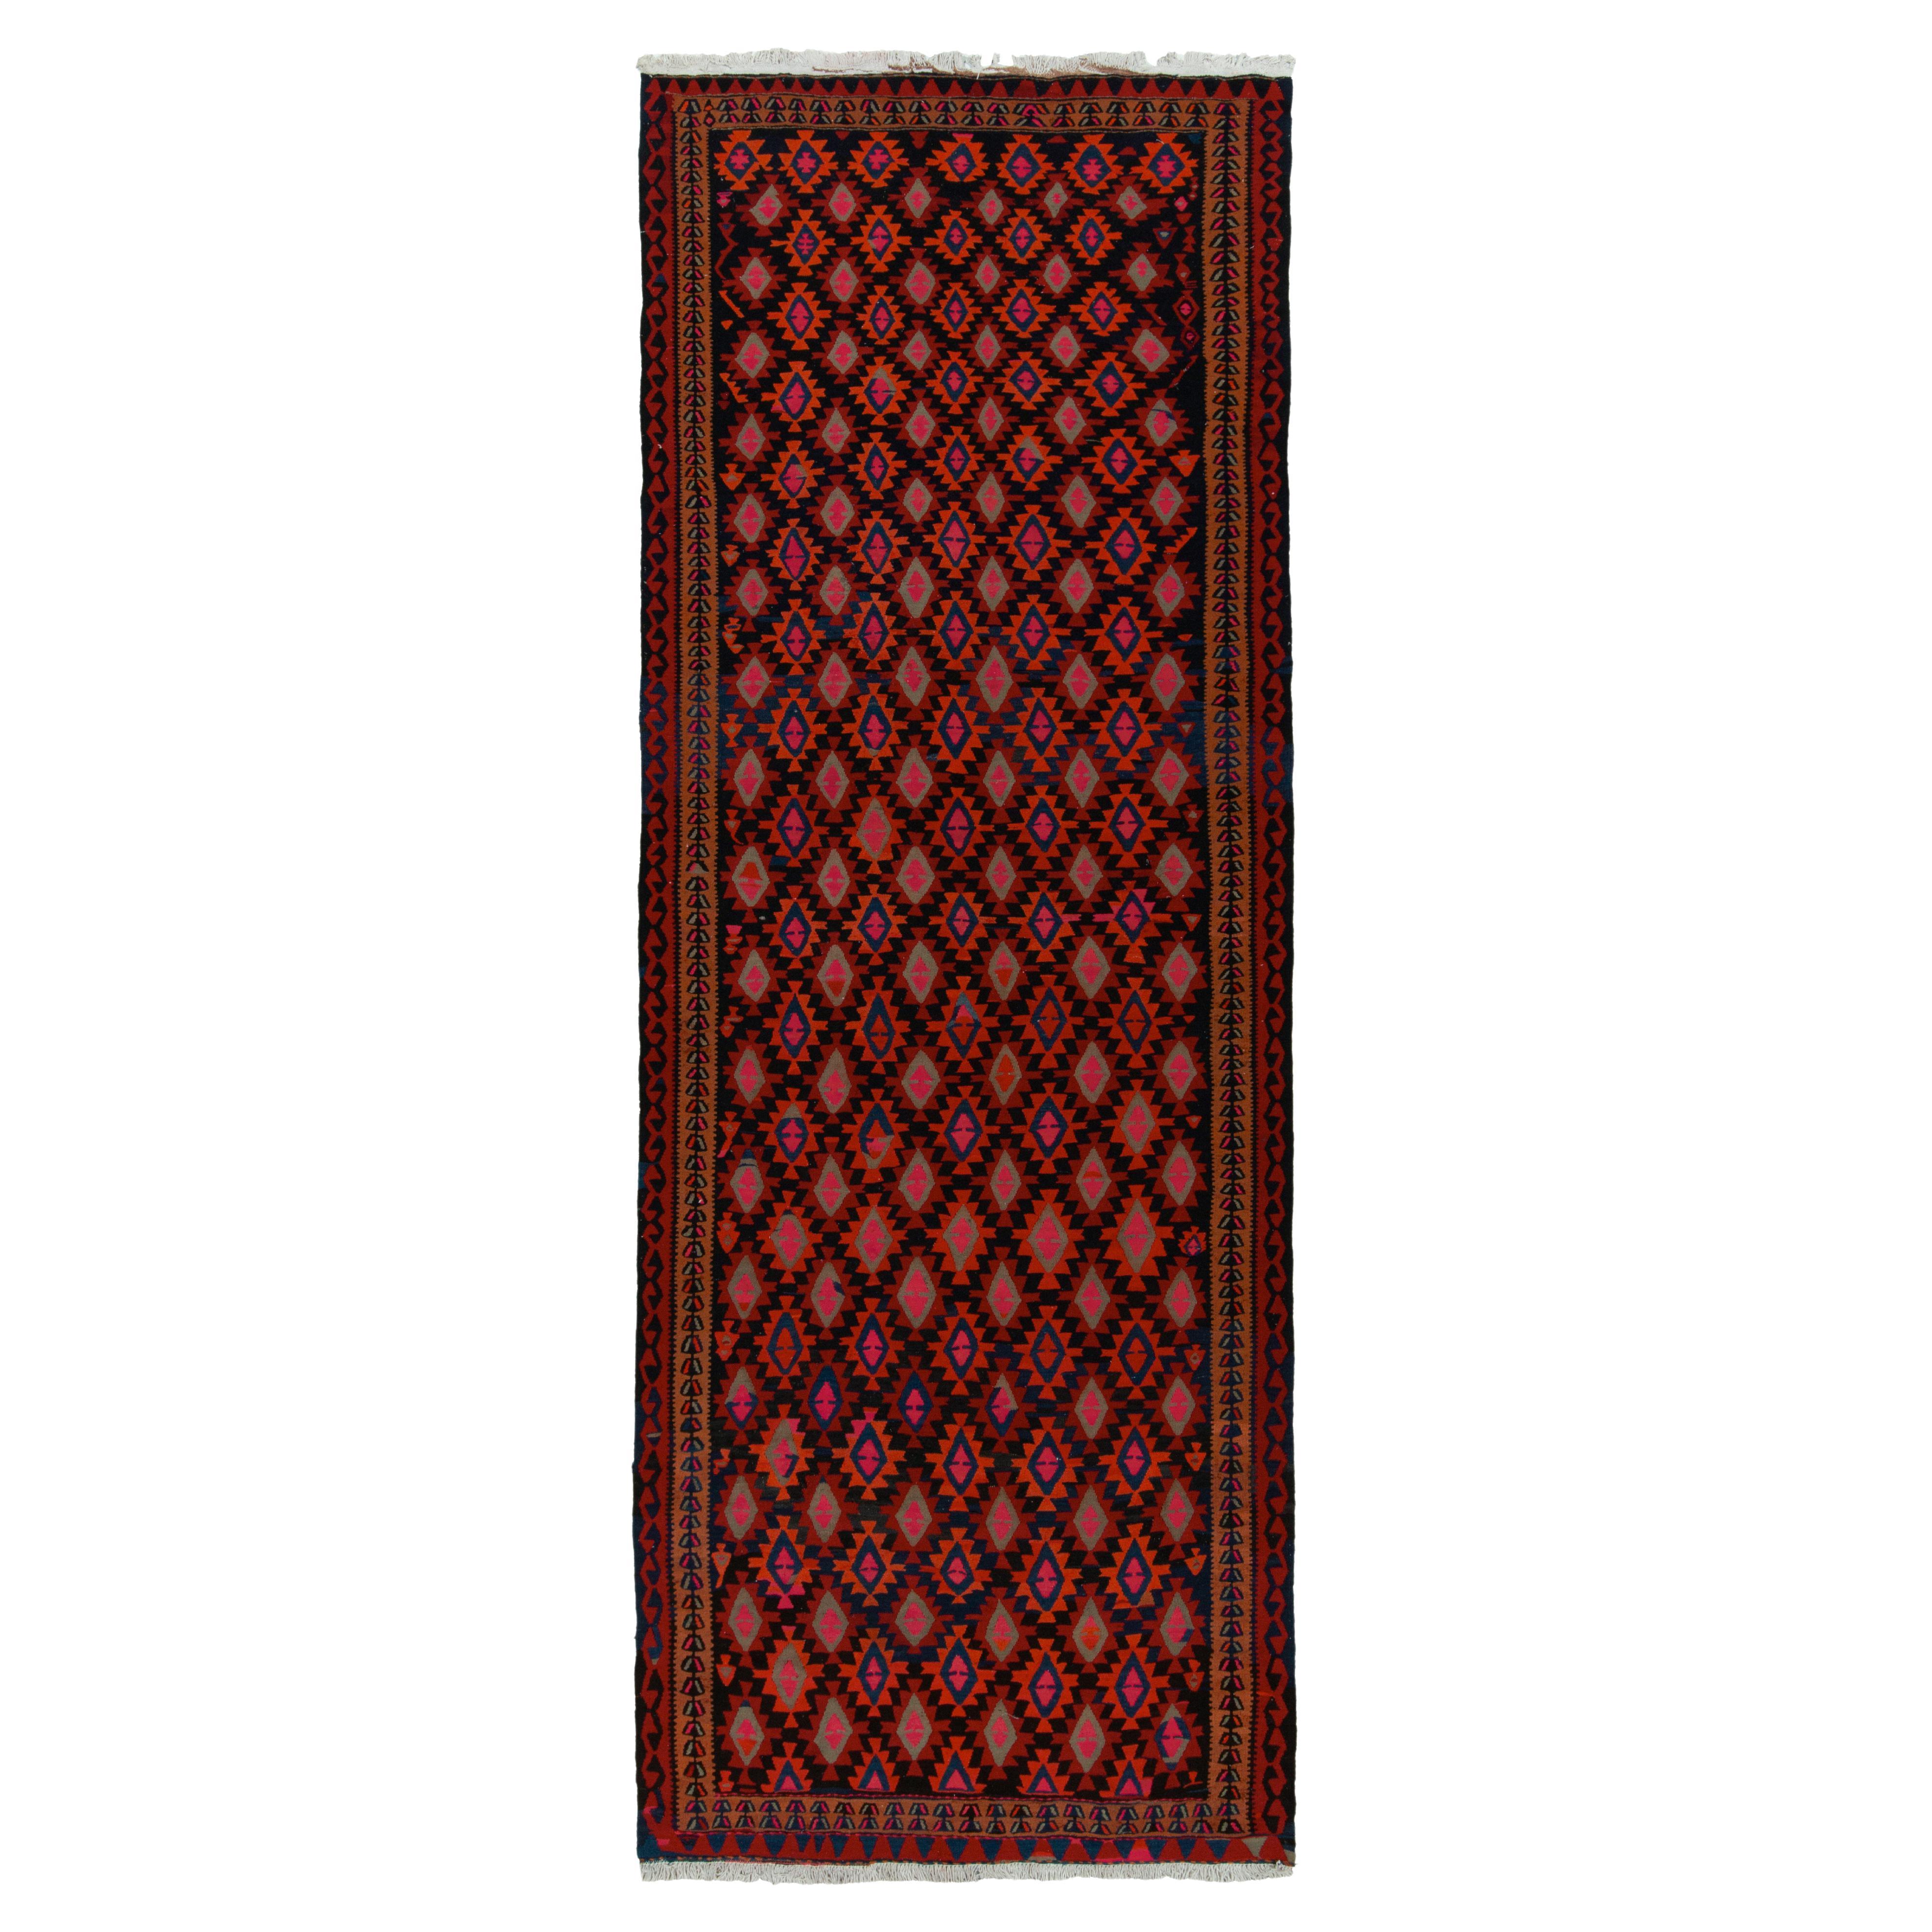 Vintage Tribal Kilim Rug in Red, Black and Blue Geometric Pattern by Rug & Kilim